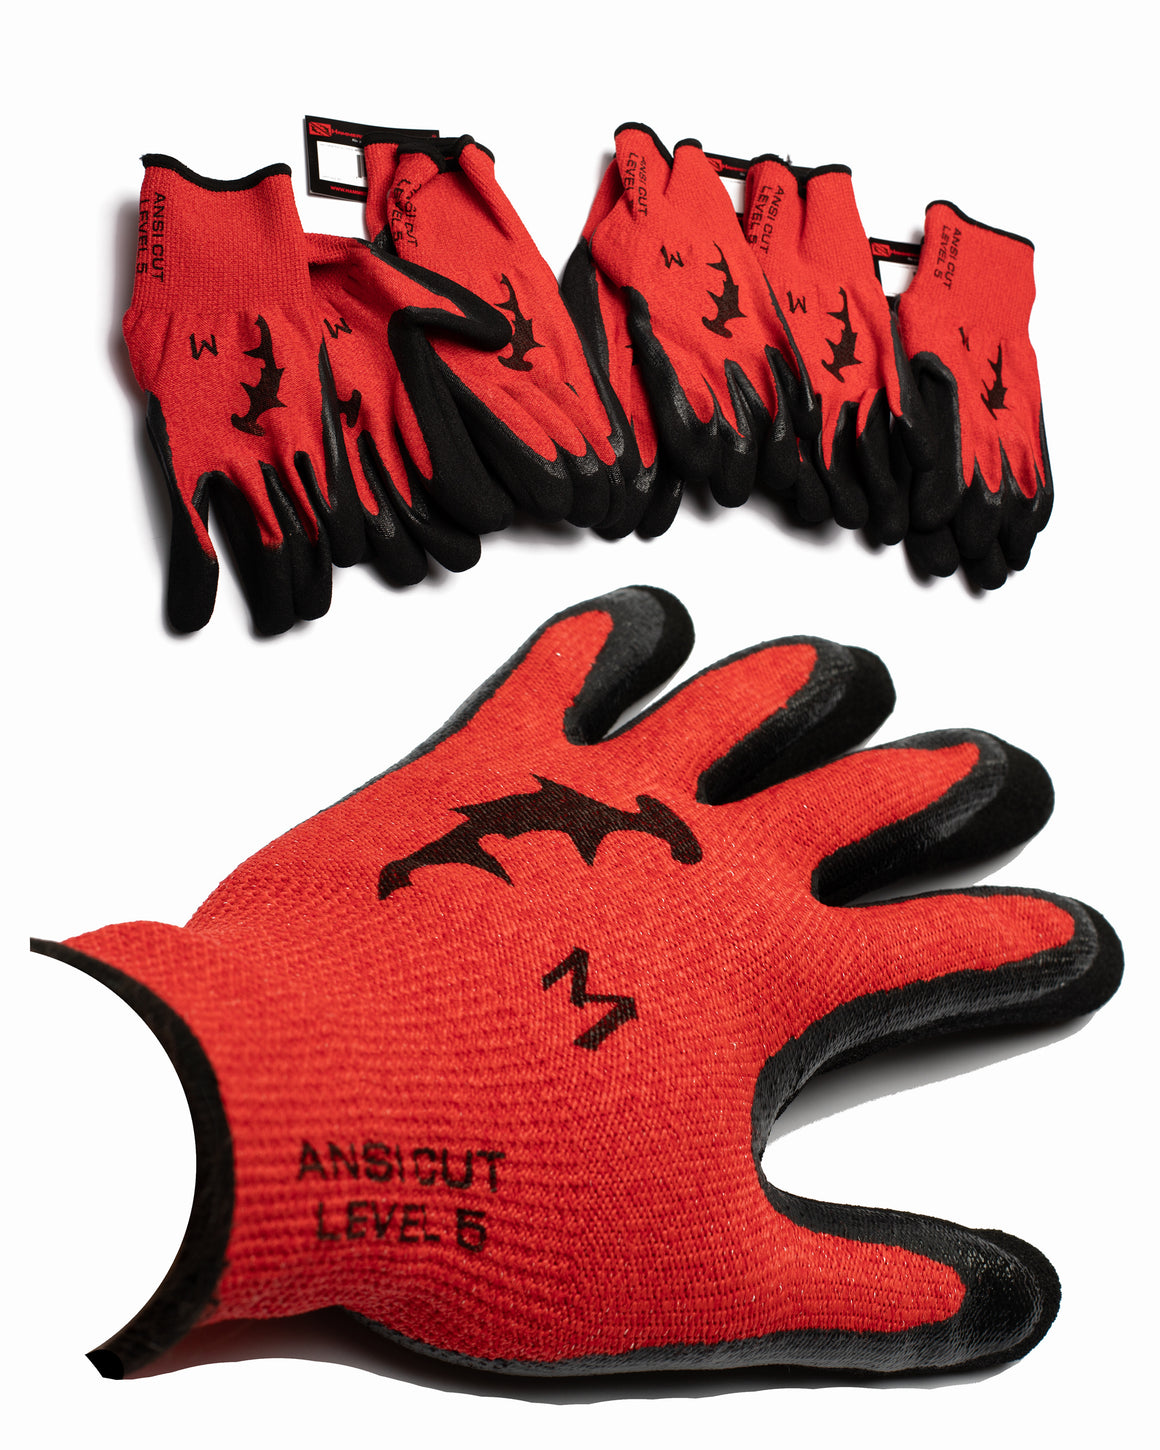 Hammer Head Gloves